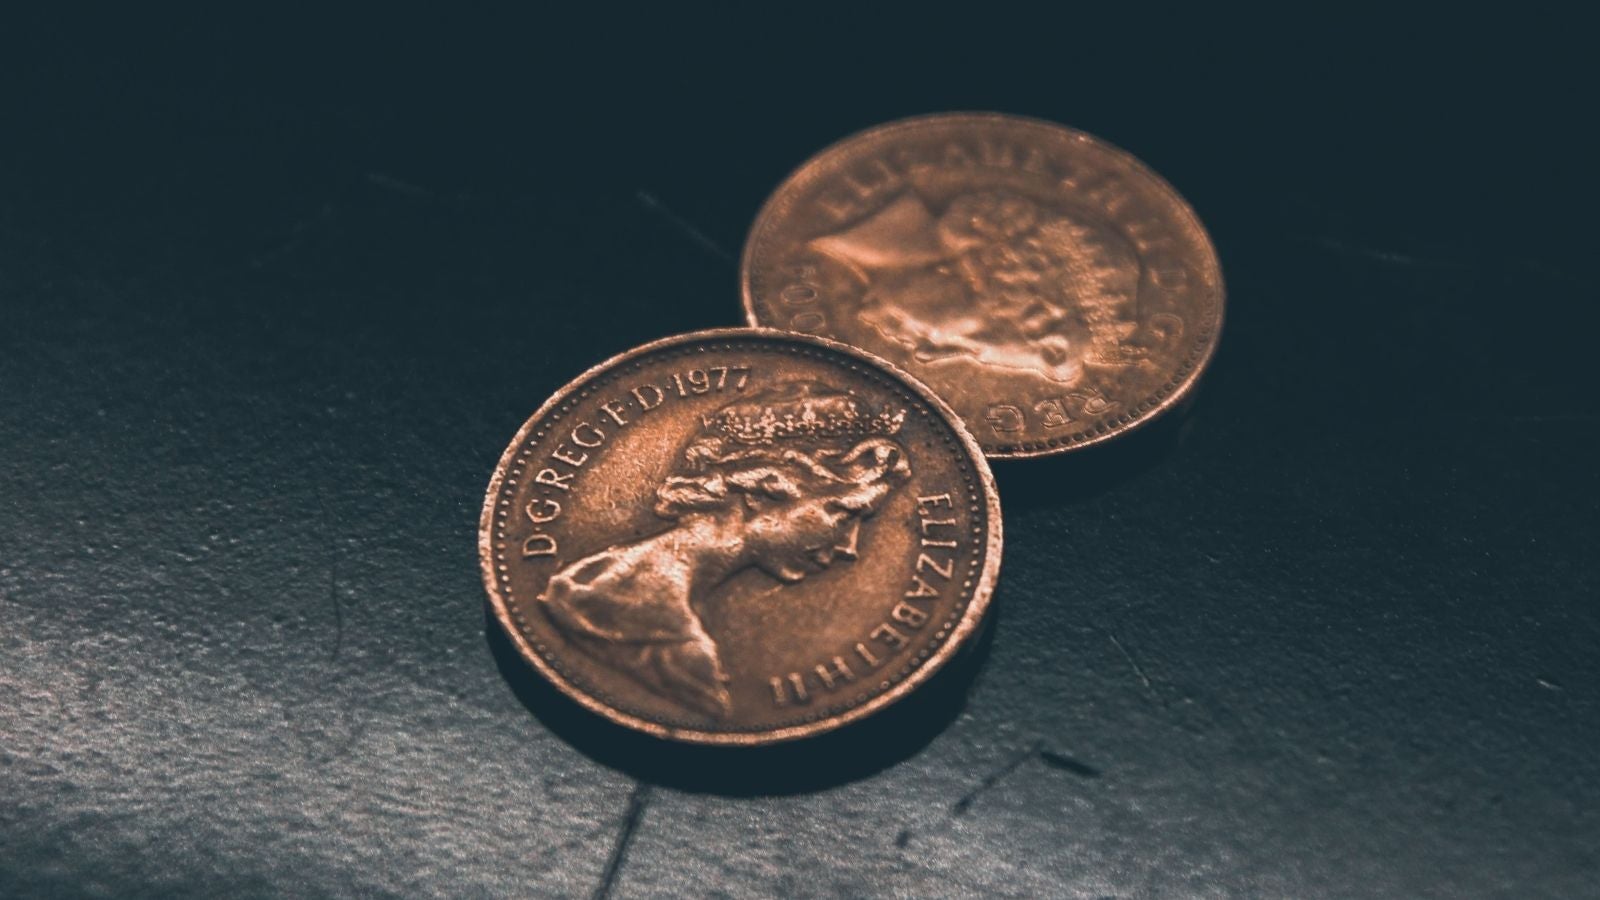 Two British pennies showing the head of Queen Elizabeth II 